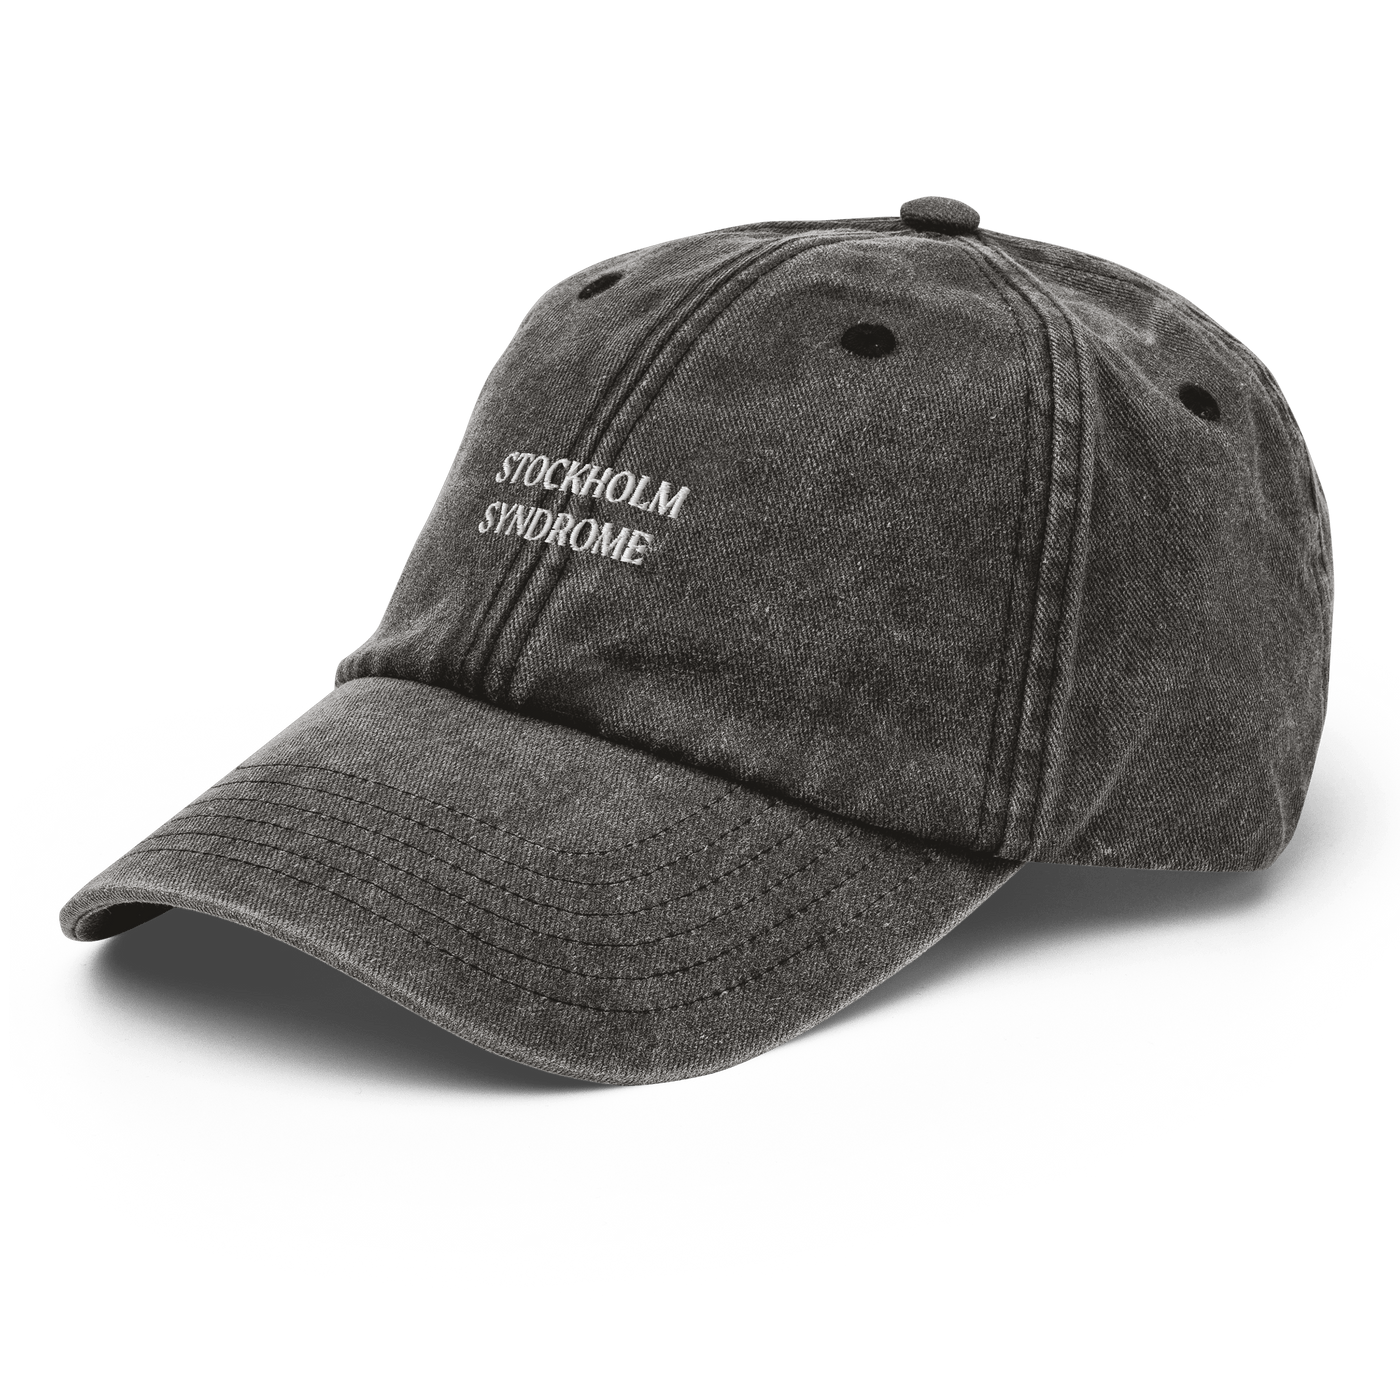 Stockholm Syndrome Vintage Hat - Vintage Black - - Just Another Cap Store